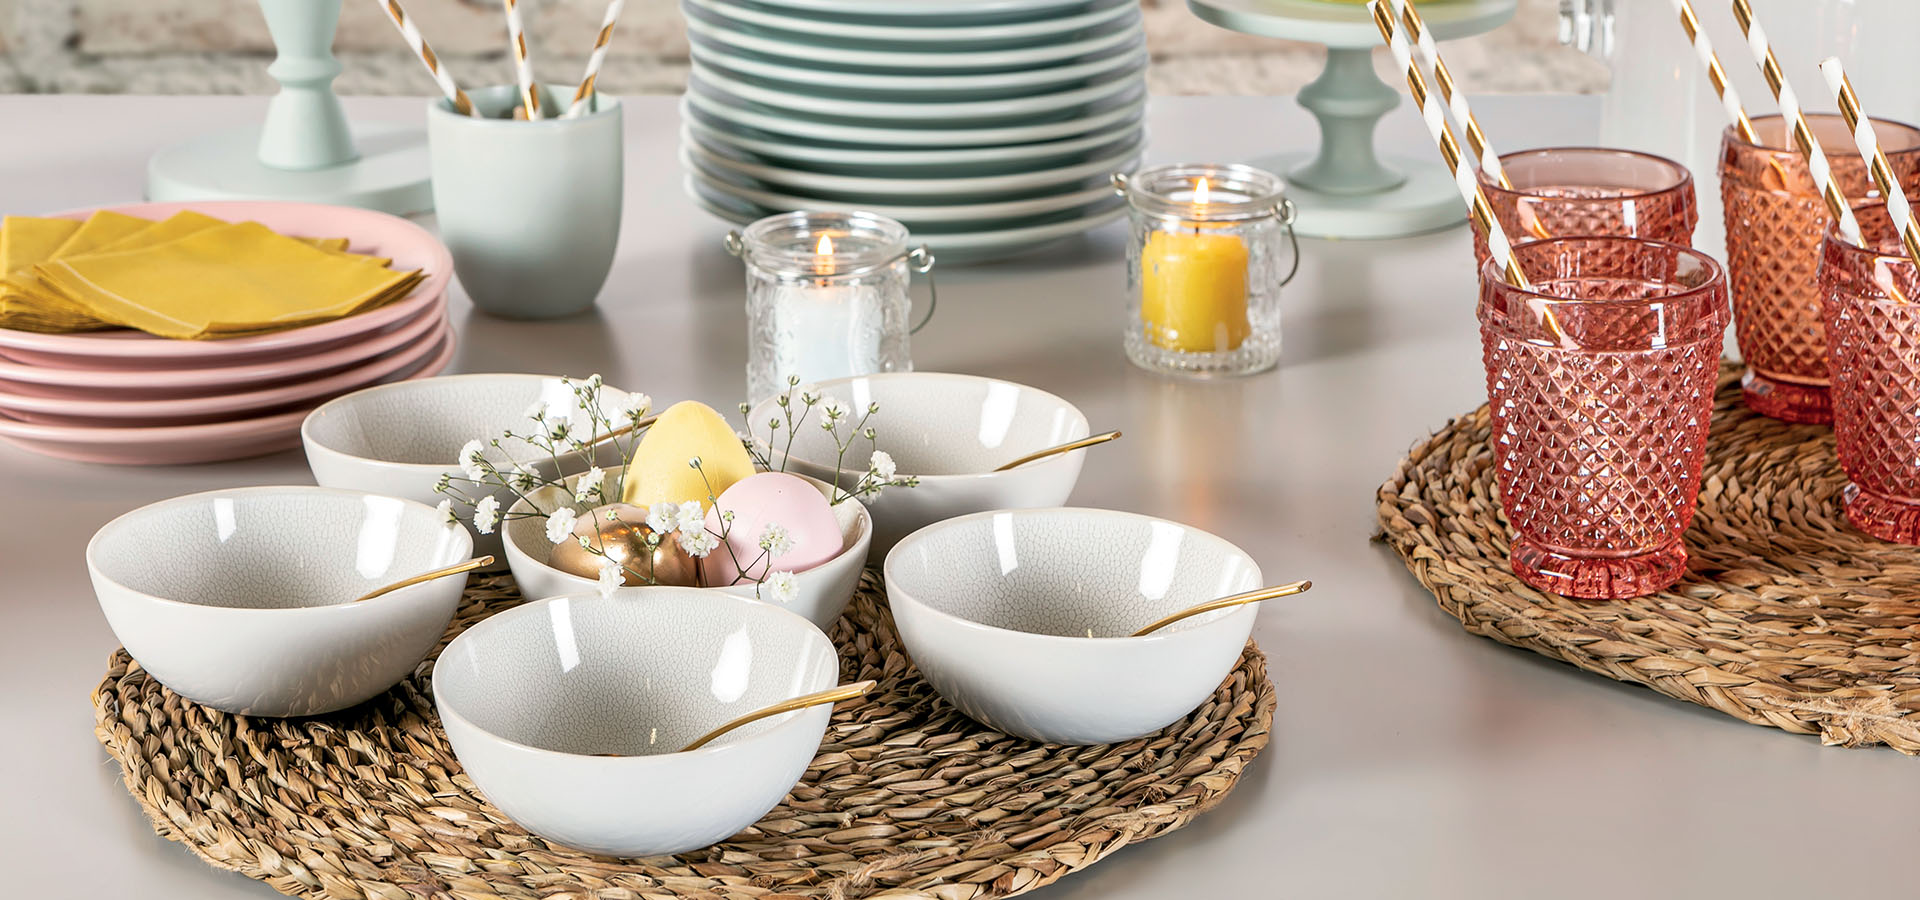 Banquet de Pâques : raffinement et confort grâce à la location de vaisselle